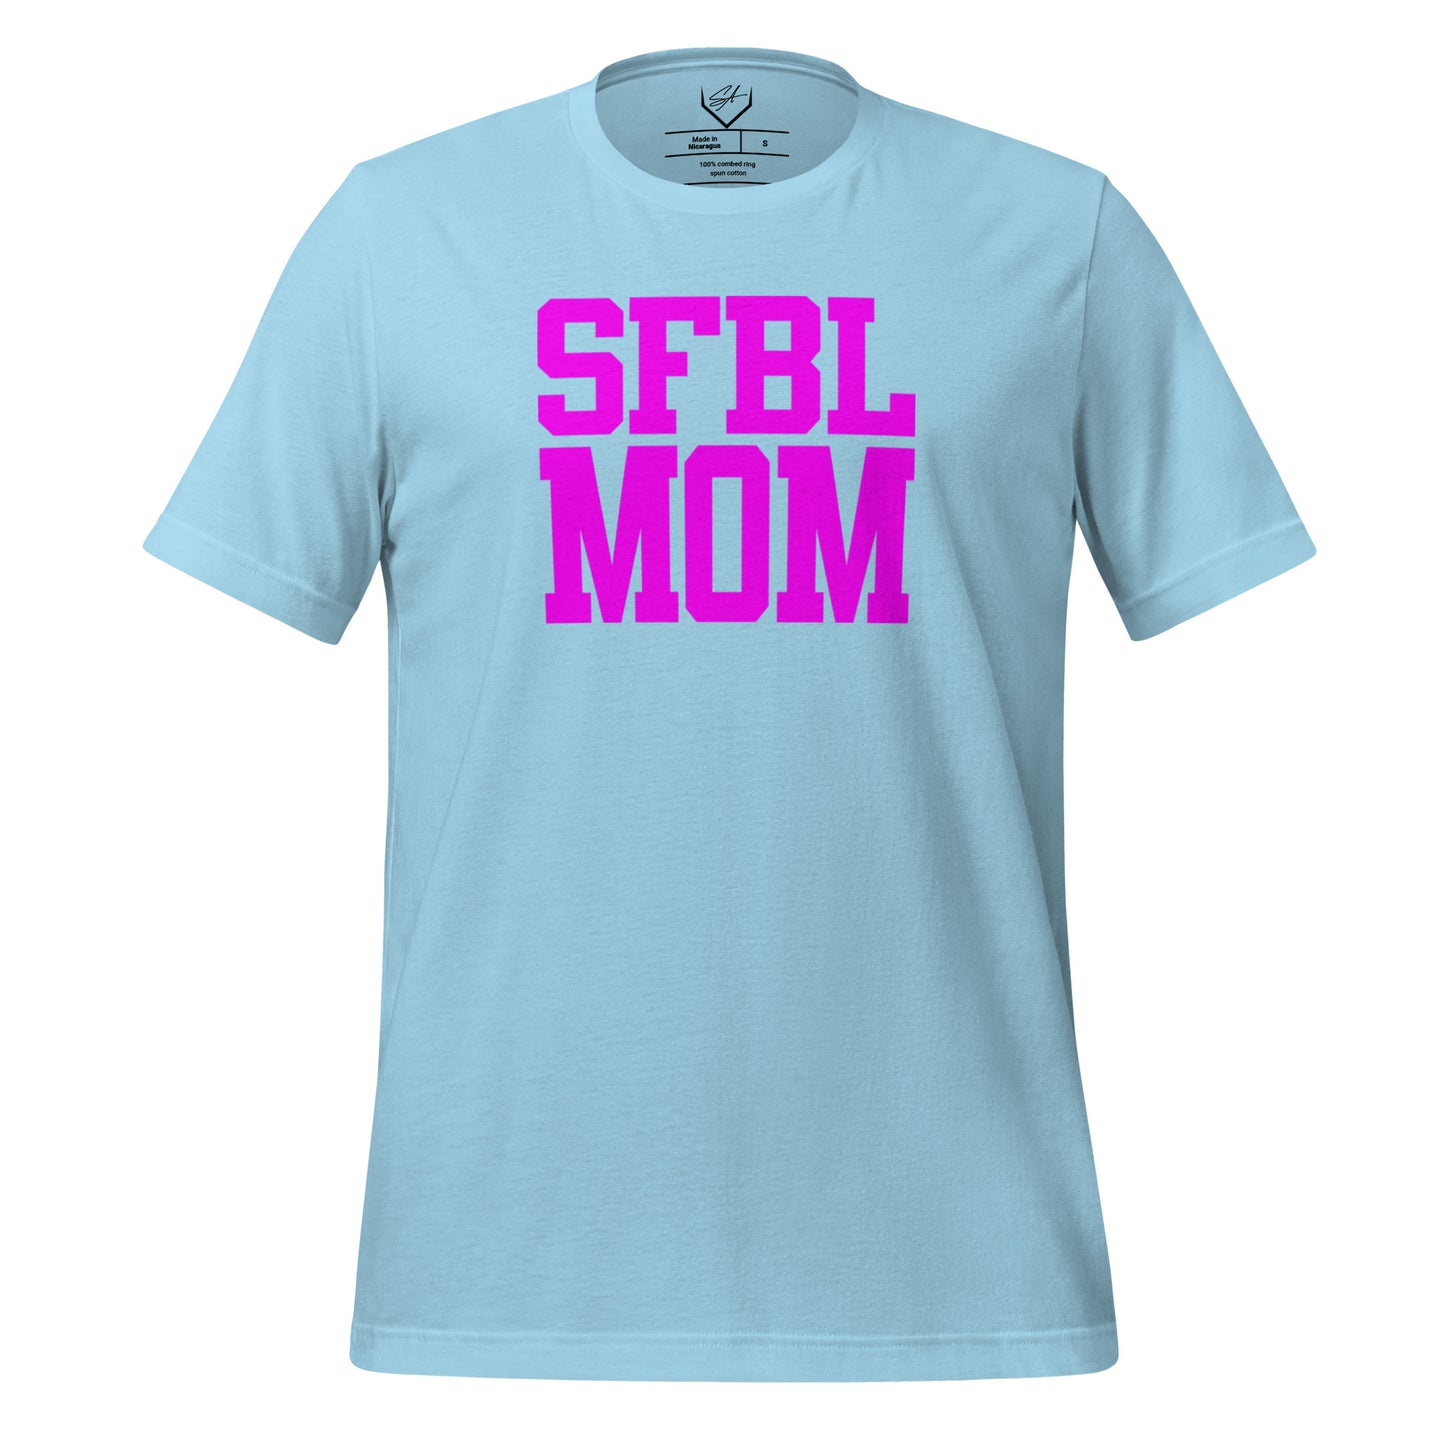 SFBL Mom Pink - Adult Tee